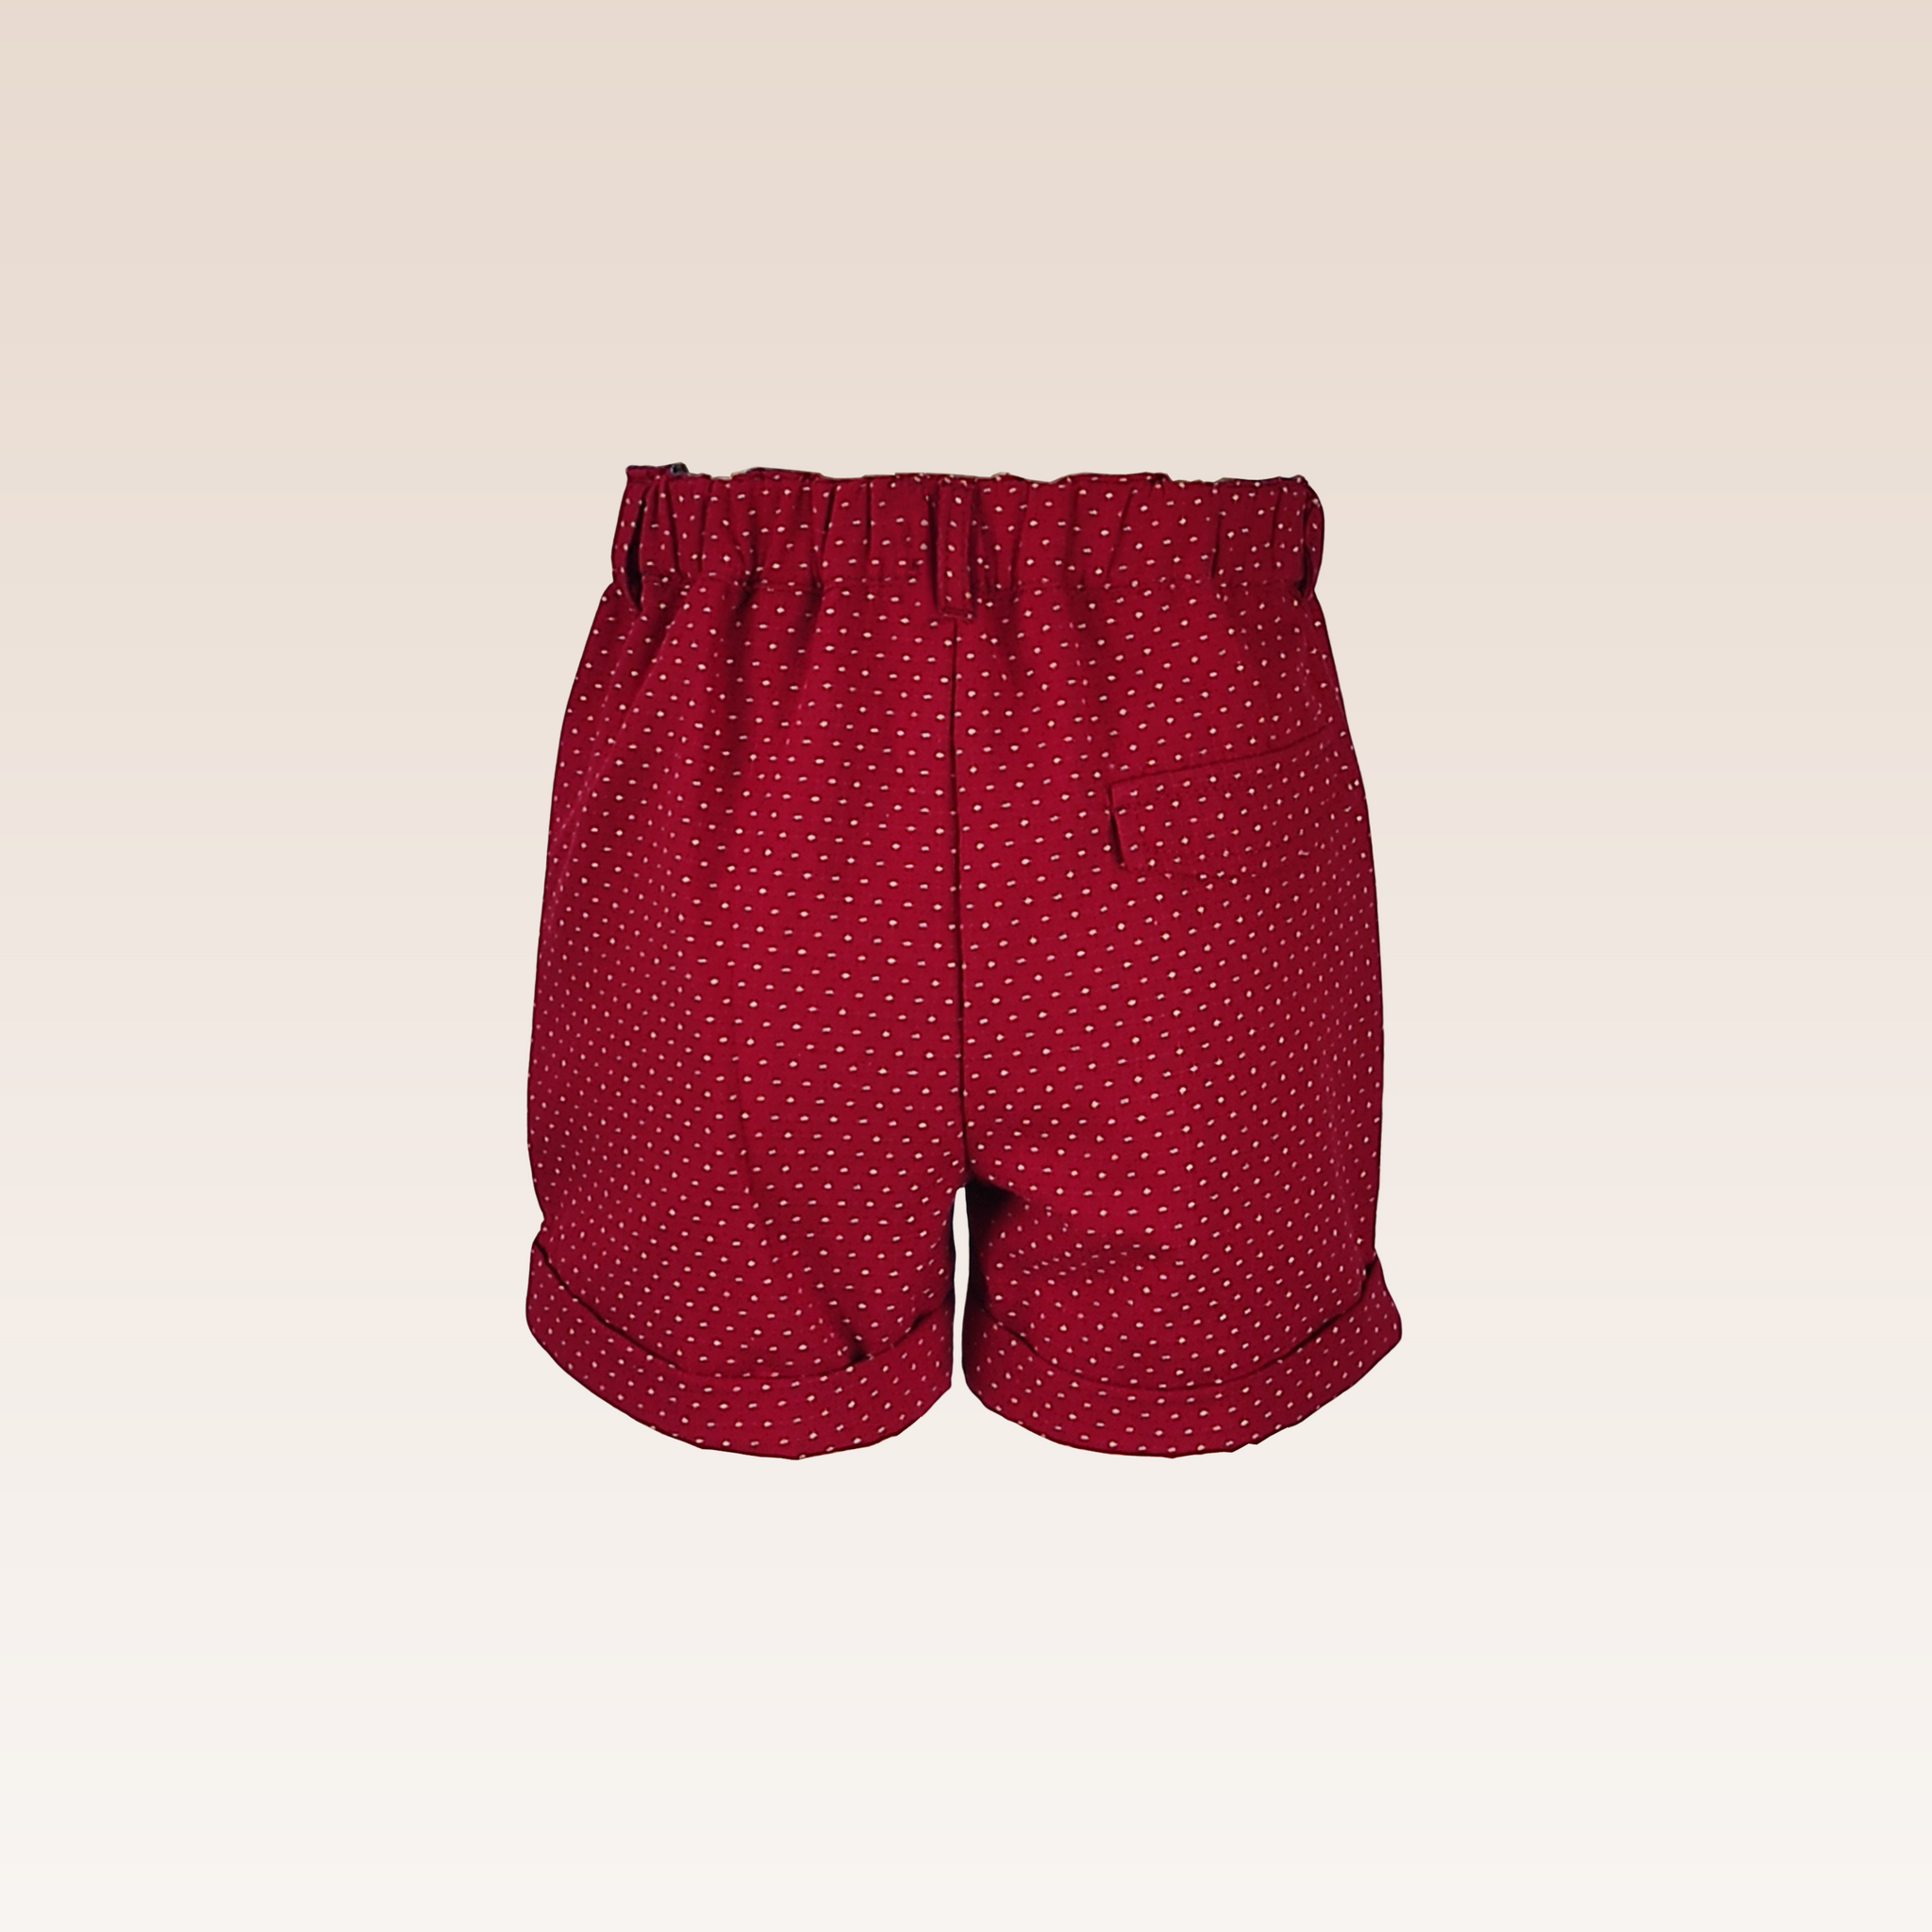 Carly Baby Girls Red Dobby print shorts turn-up bottom hem